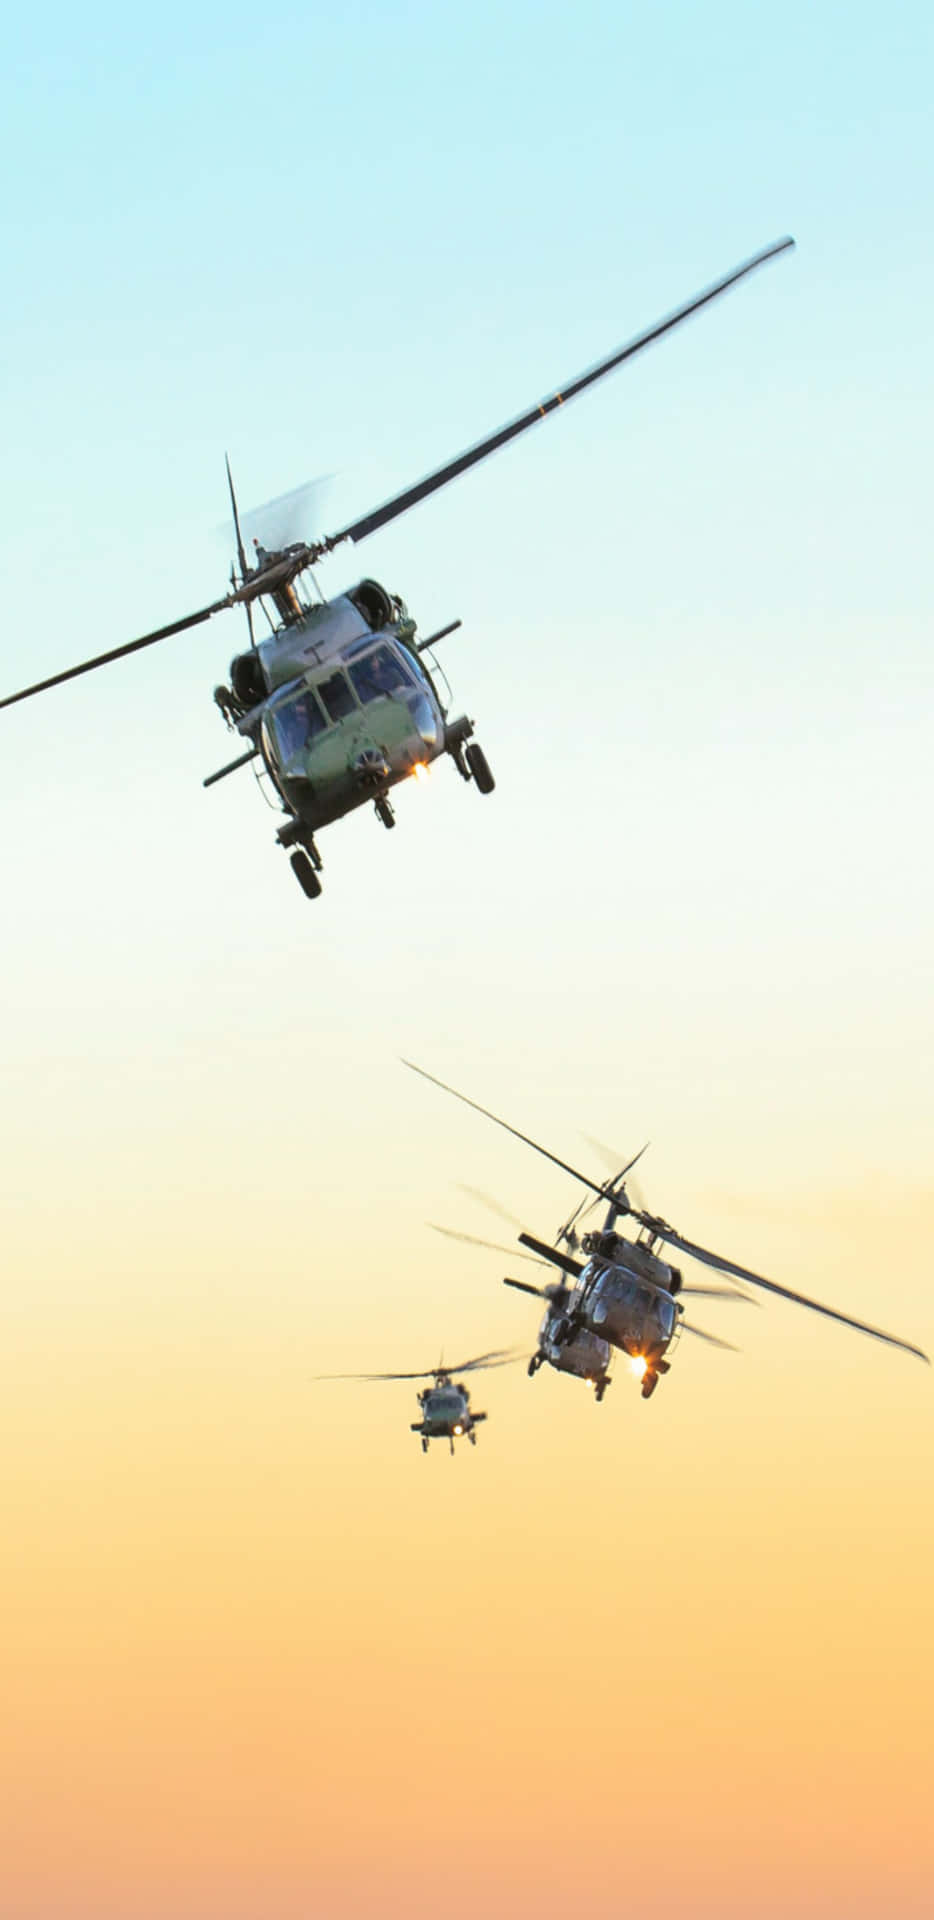 Pixel 3xl Helicopters Baggrund Tre Sikorsky UH-60 Black Hawk helikoptere flyver forbi en hvid skyskraber.